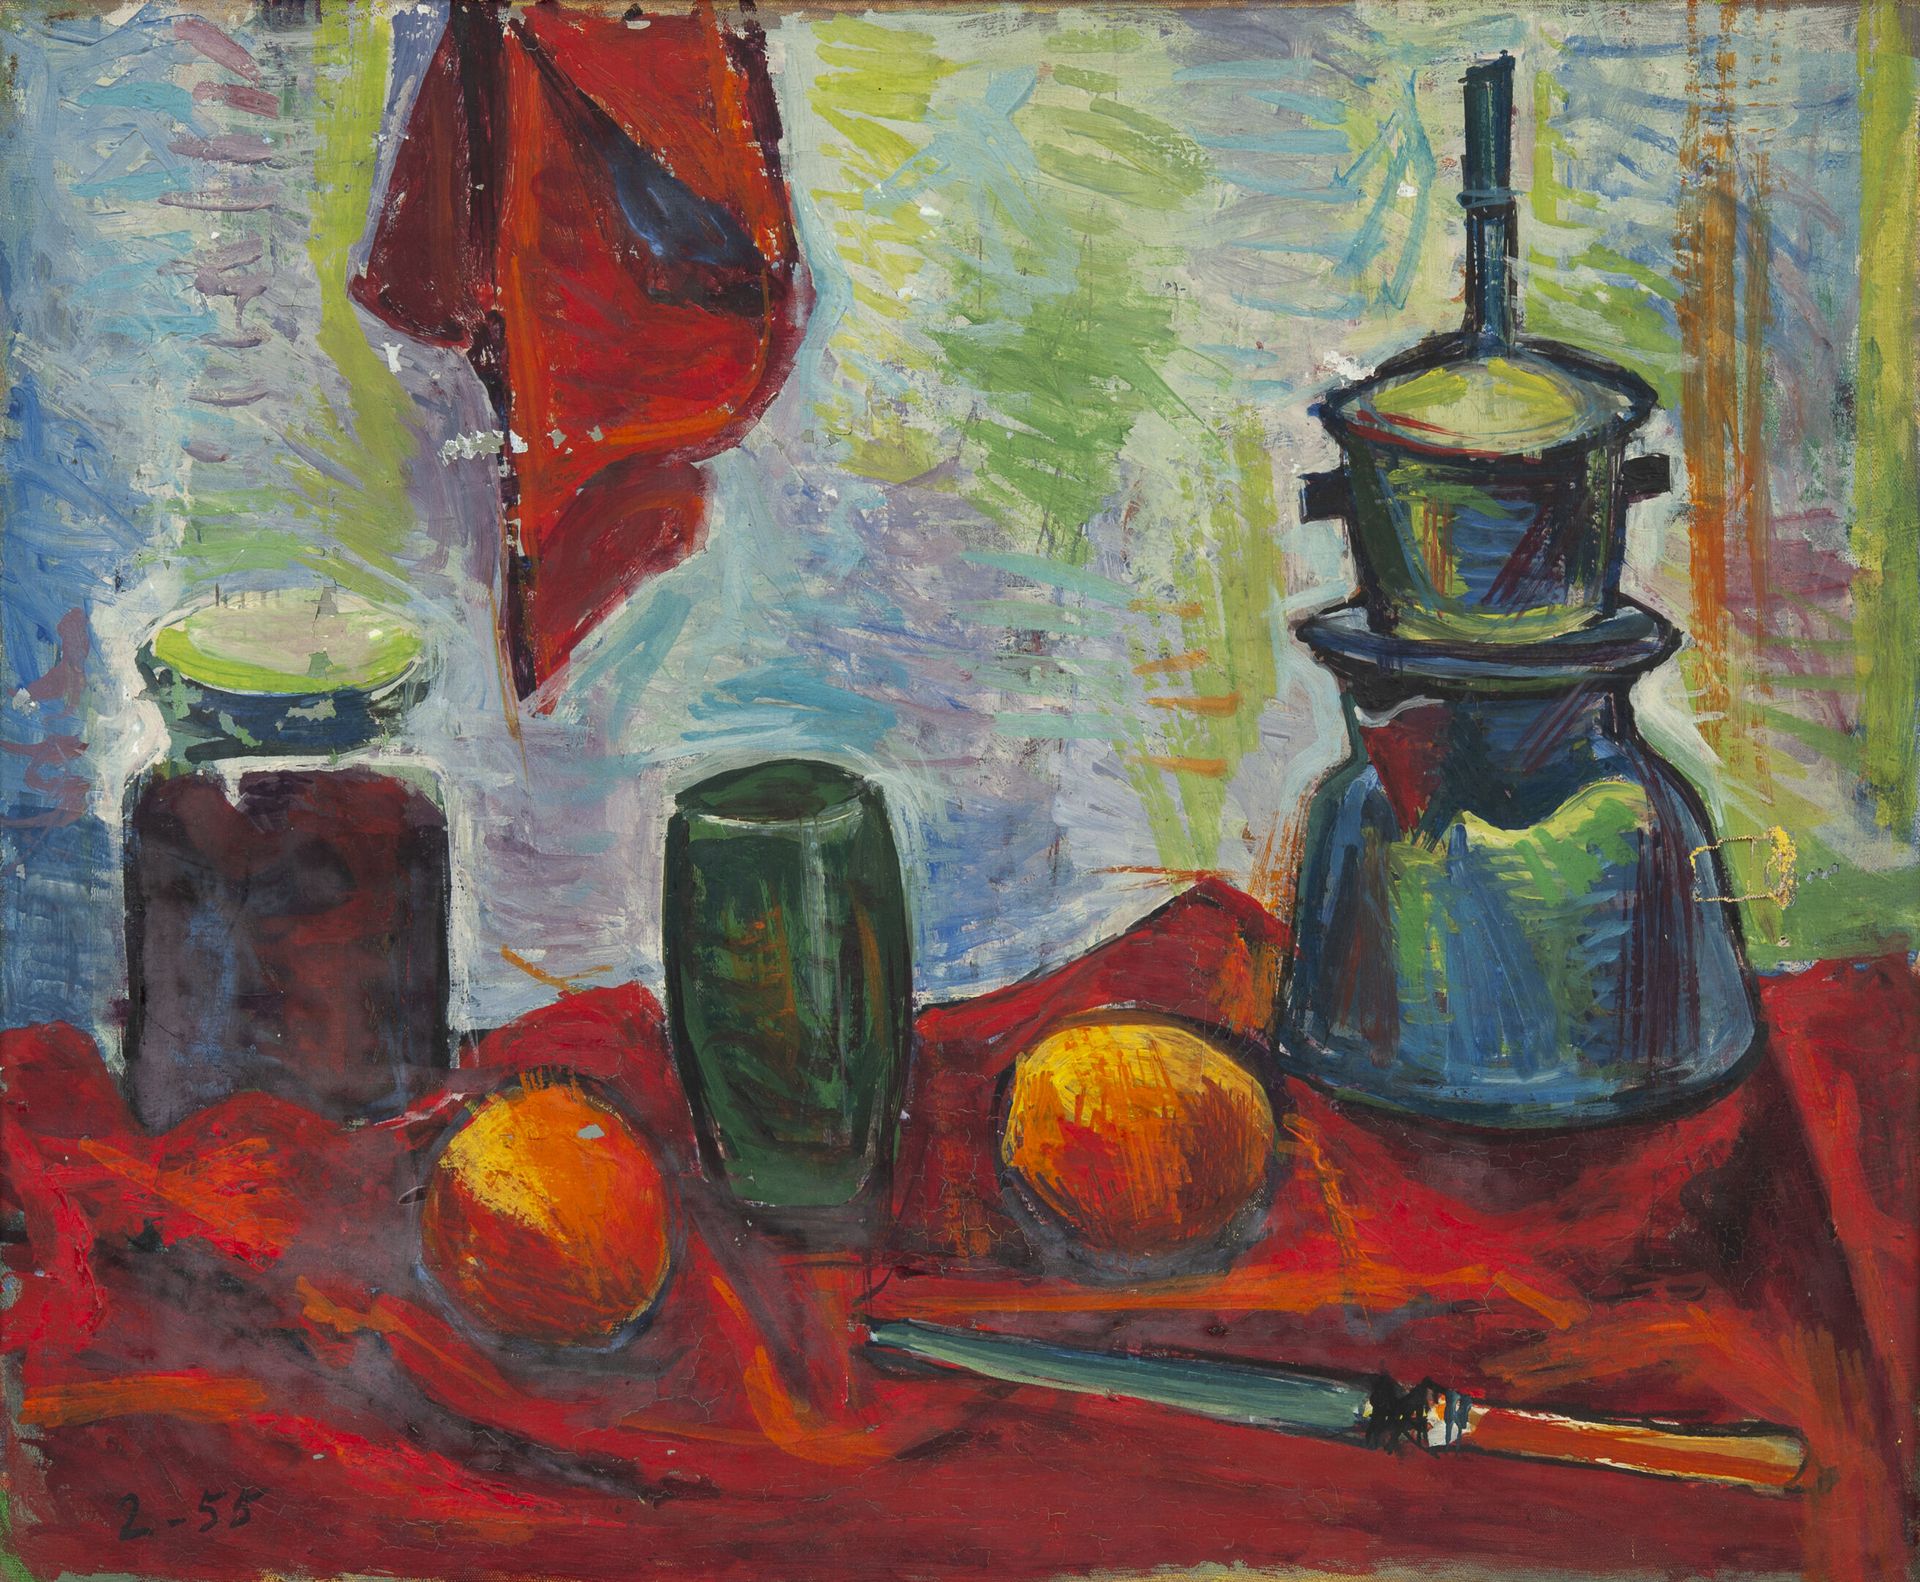 Alberto FABRA (1920-2011) 有茶壶和水果的静物，1955年。

布面油画。

无符号。左下角有 "2-55 "的日期。

38 x 46&hellip;